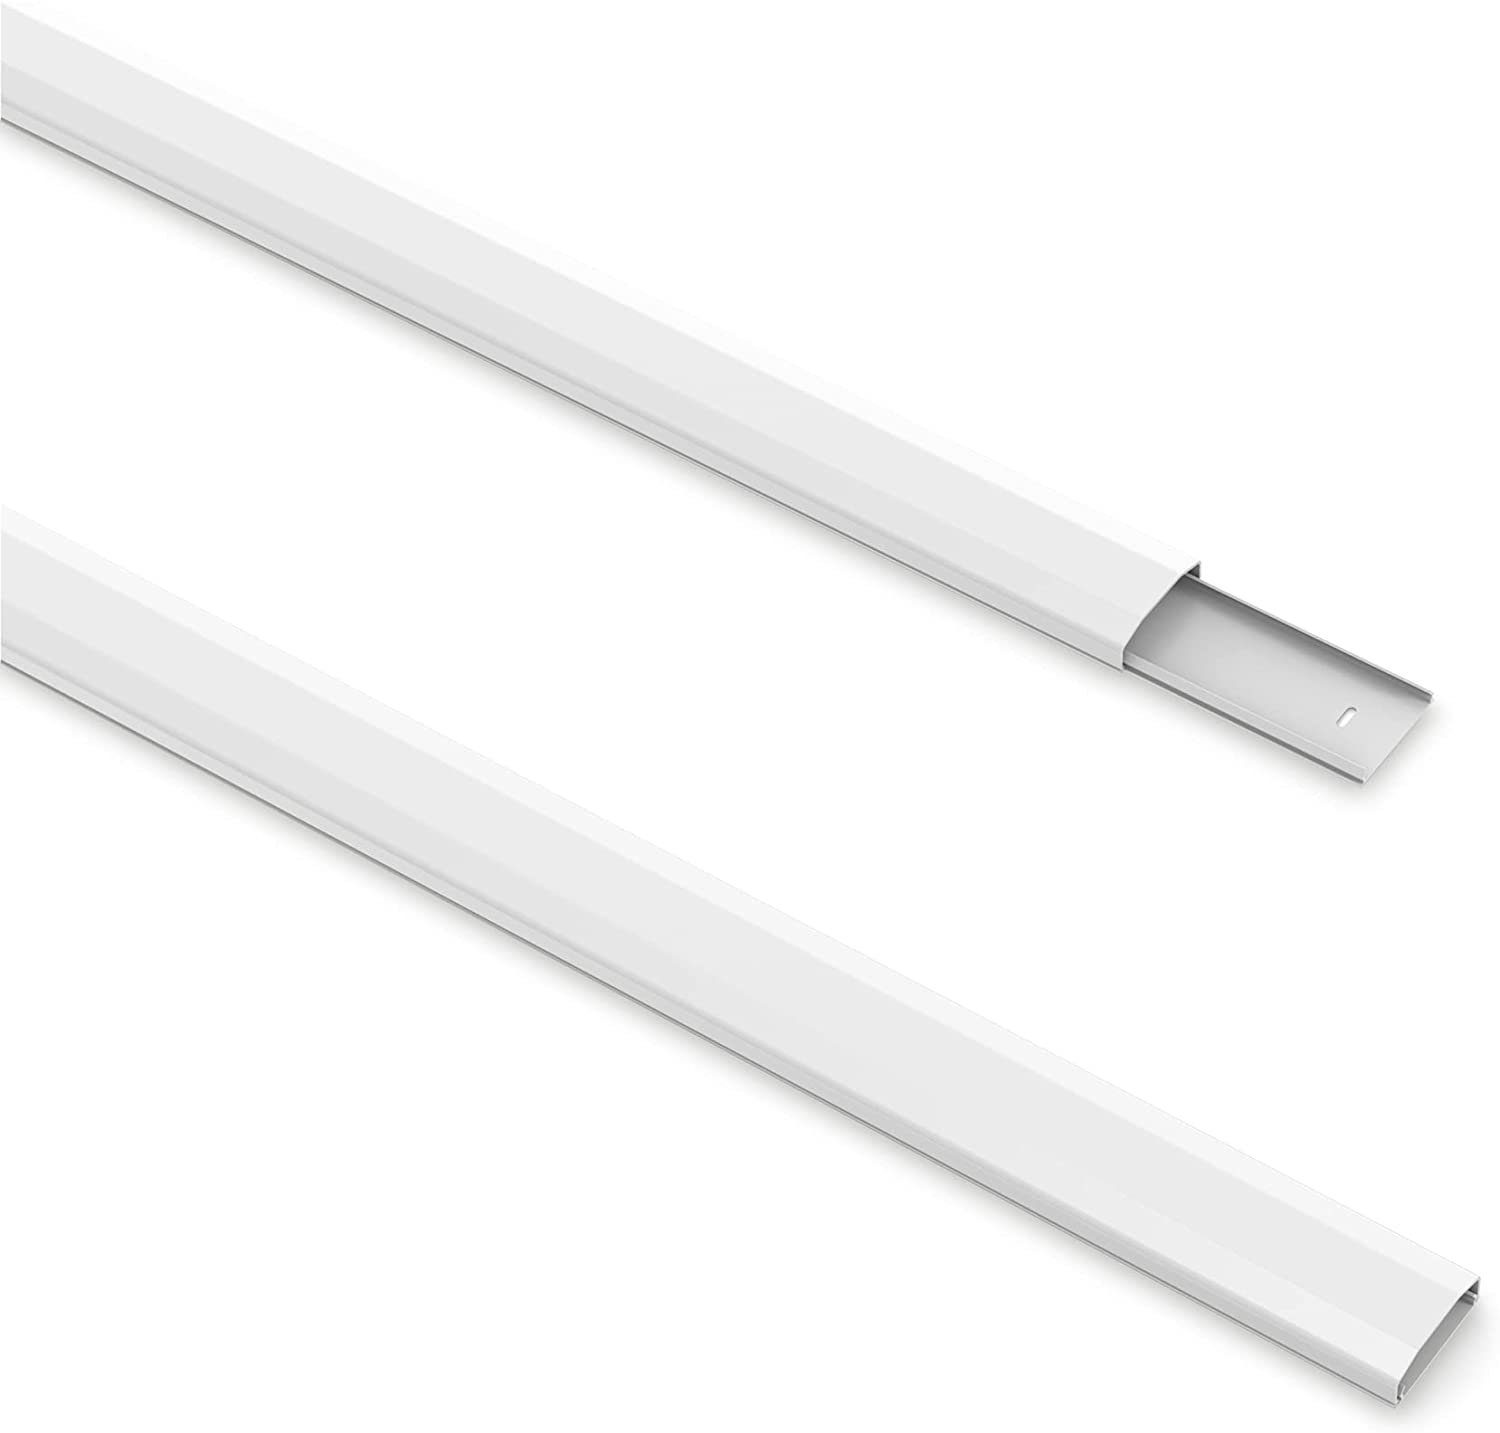 PureMounts Kabelkanal mit Klebeband + Schrauben/Dübel, aus Kunststoff, Länge: 100cm, Breite 6cm, Farbe: weiß